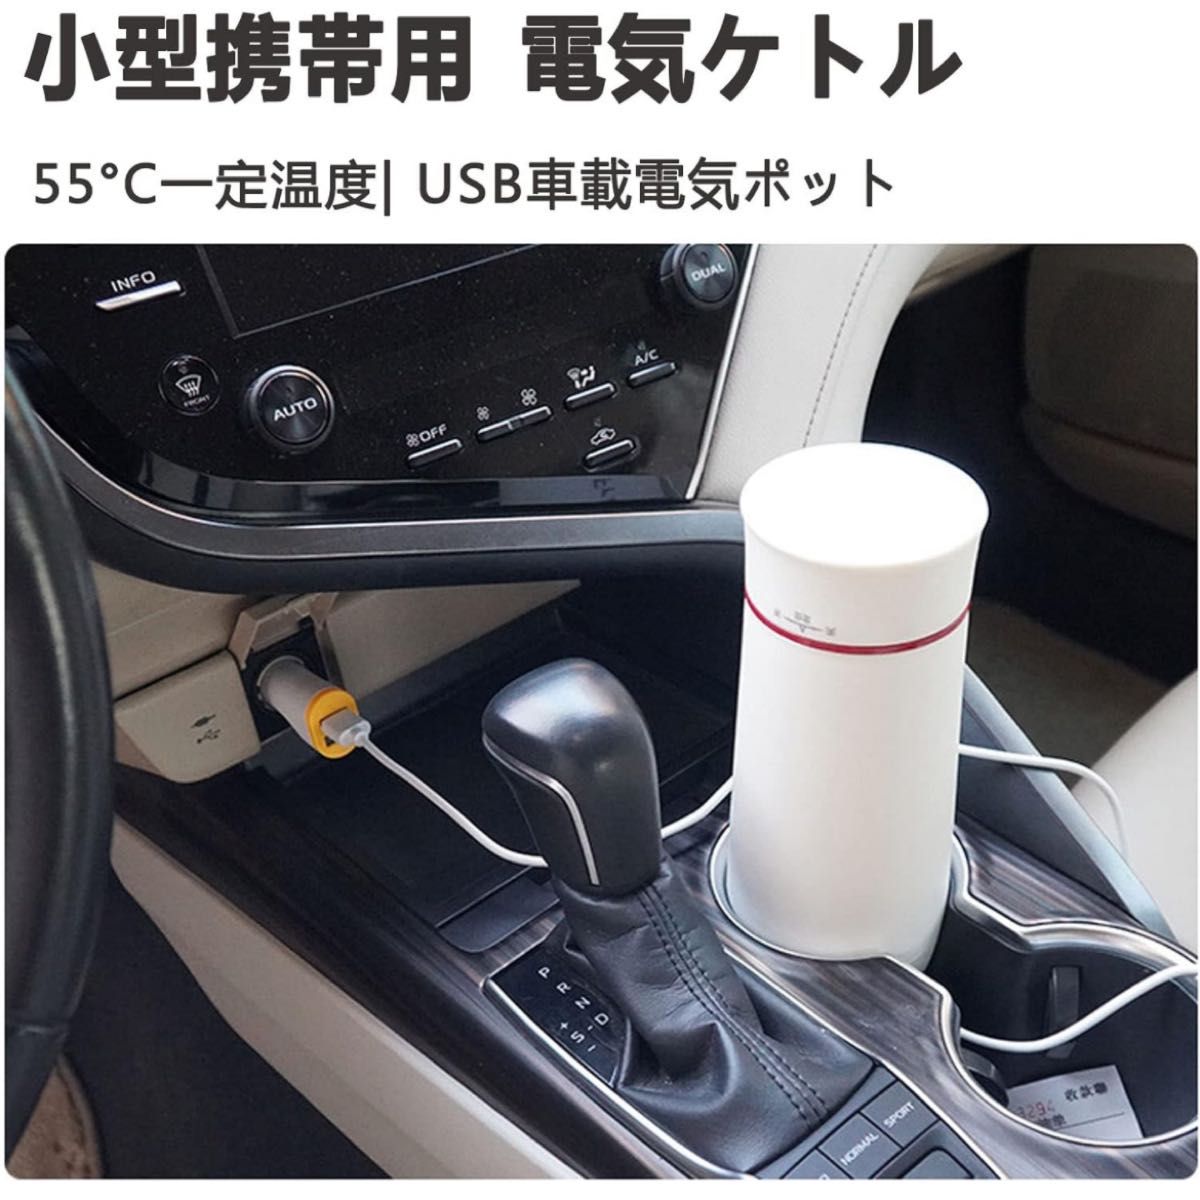 C1 電気ケトル 小型 携帯湯沸かし器 USB ポータブル350ml トラベル真空断熱ボトル 55°一定温度 魔法瓶 携帯便利新品